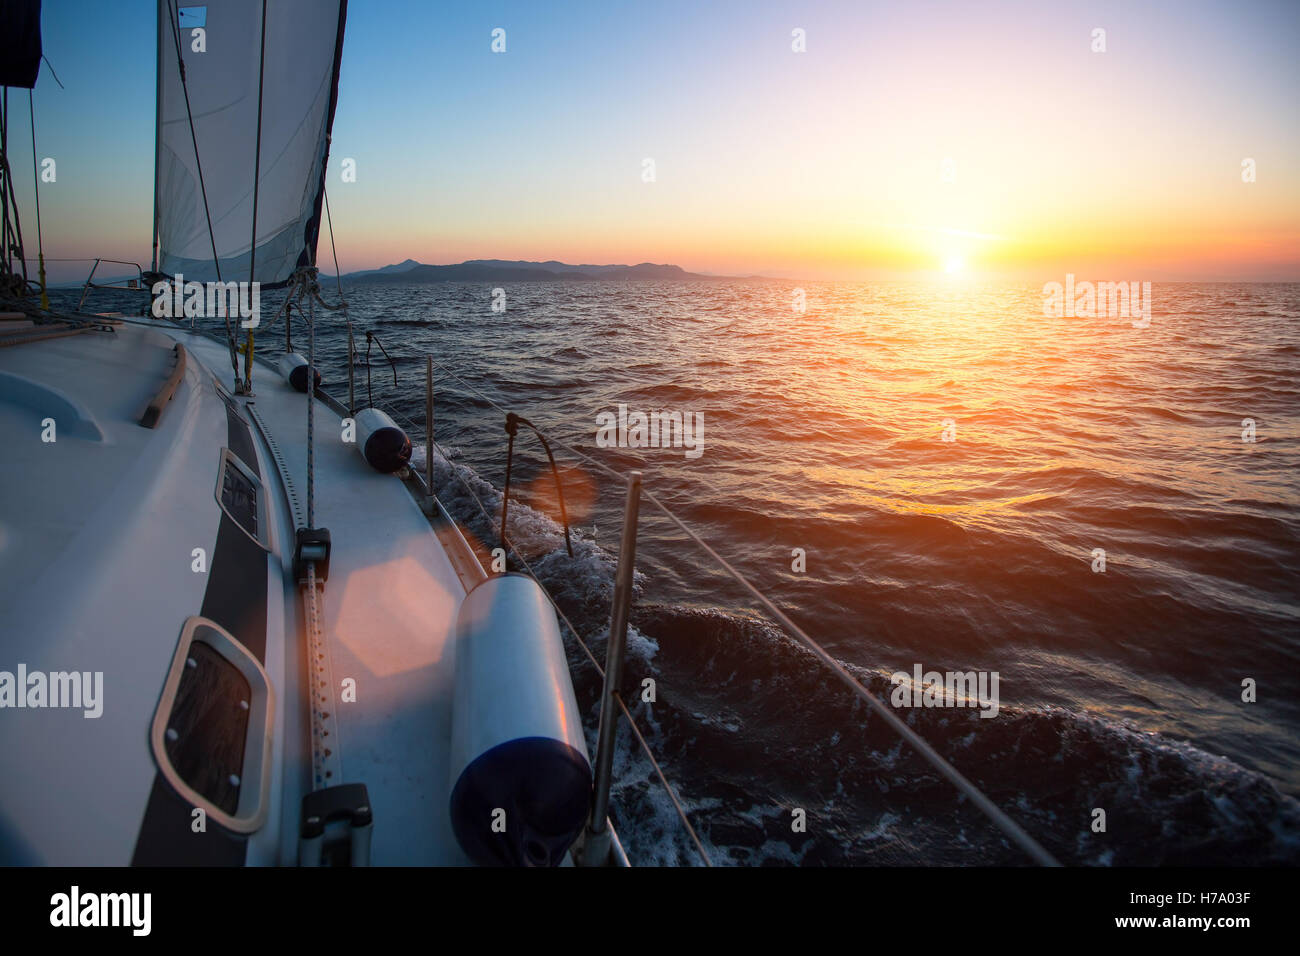 Location de bateau à contre le coucher du soleil. Bateau de luxe. Locations et voyage Concept. Banque D'Images